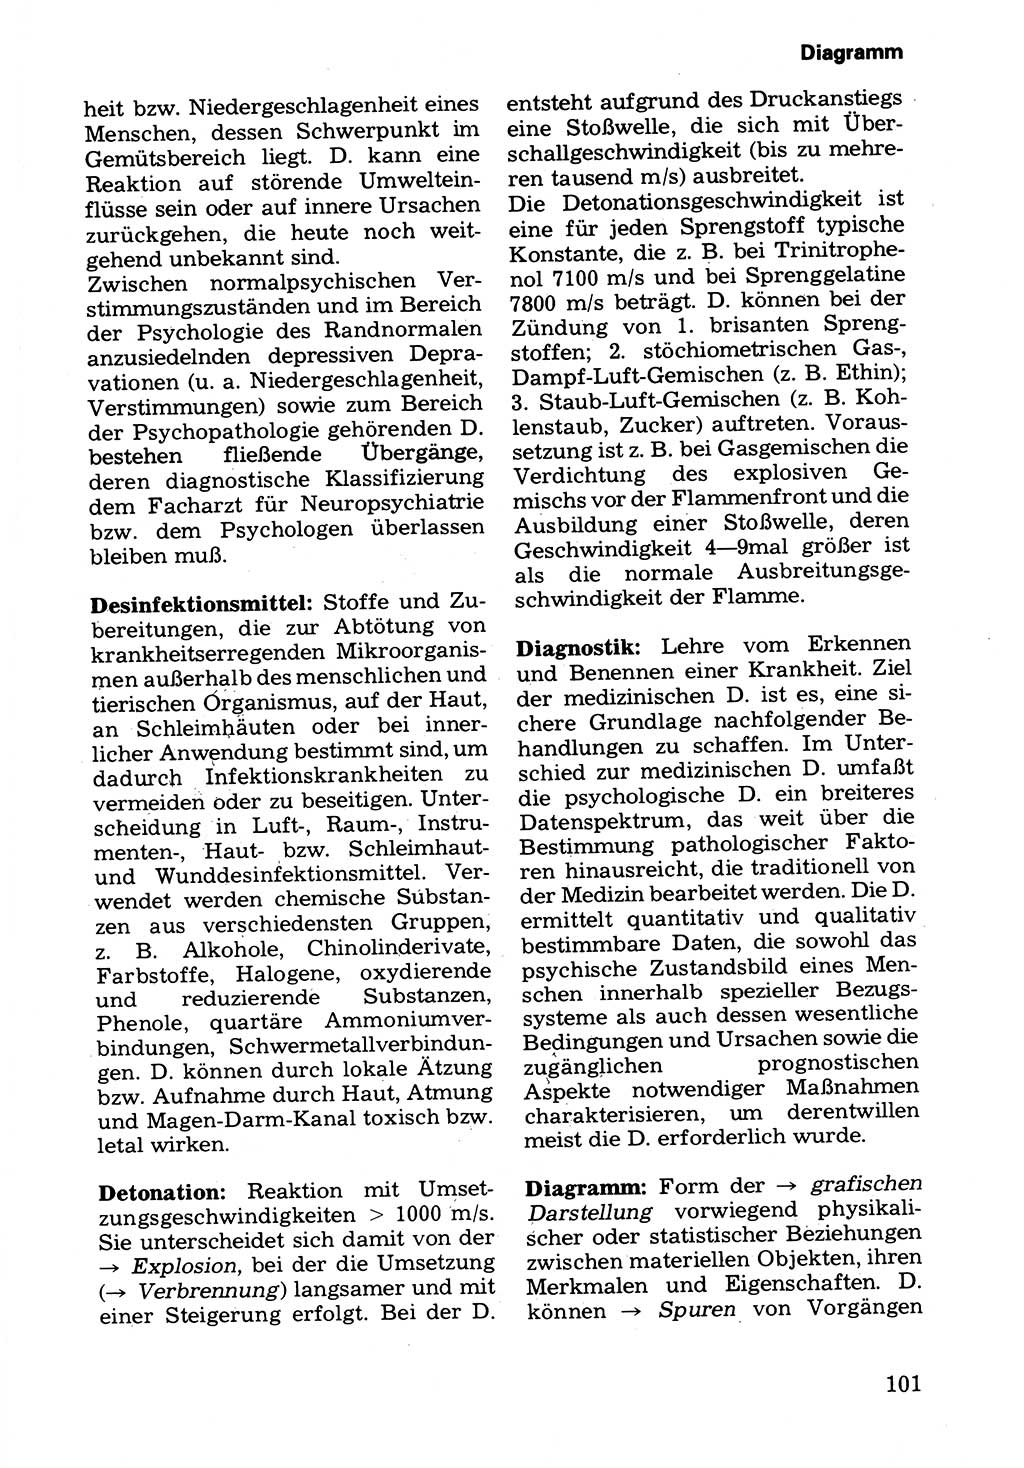 Wörterbuch der sozialistischen Kriminalistik [Deutsche Demokratische Republik (DDR)] 1981, Seite 101 (Wb. soz. Krim. DDR 1981, S. 101)